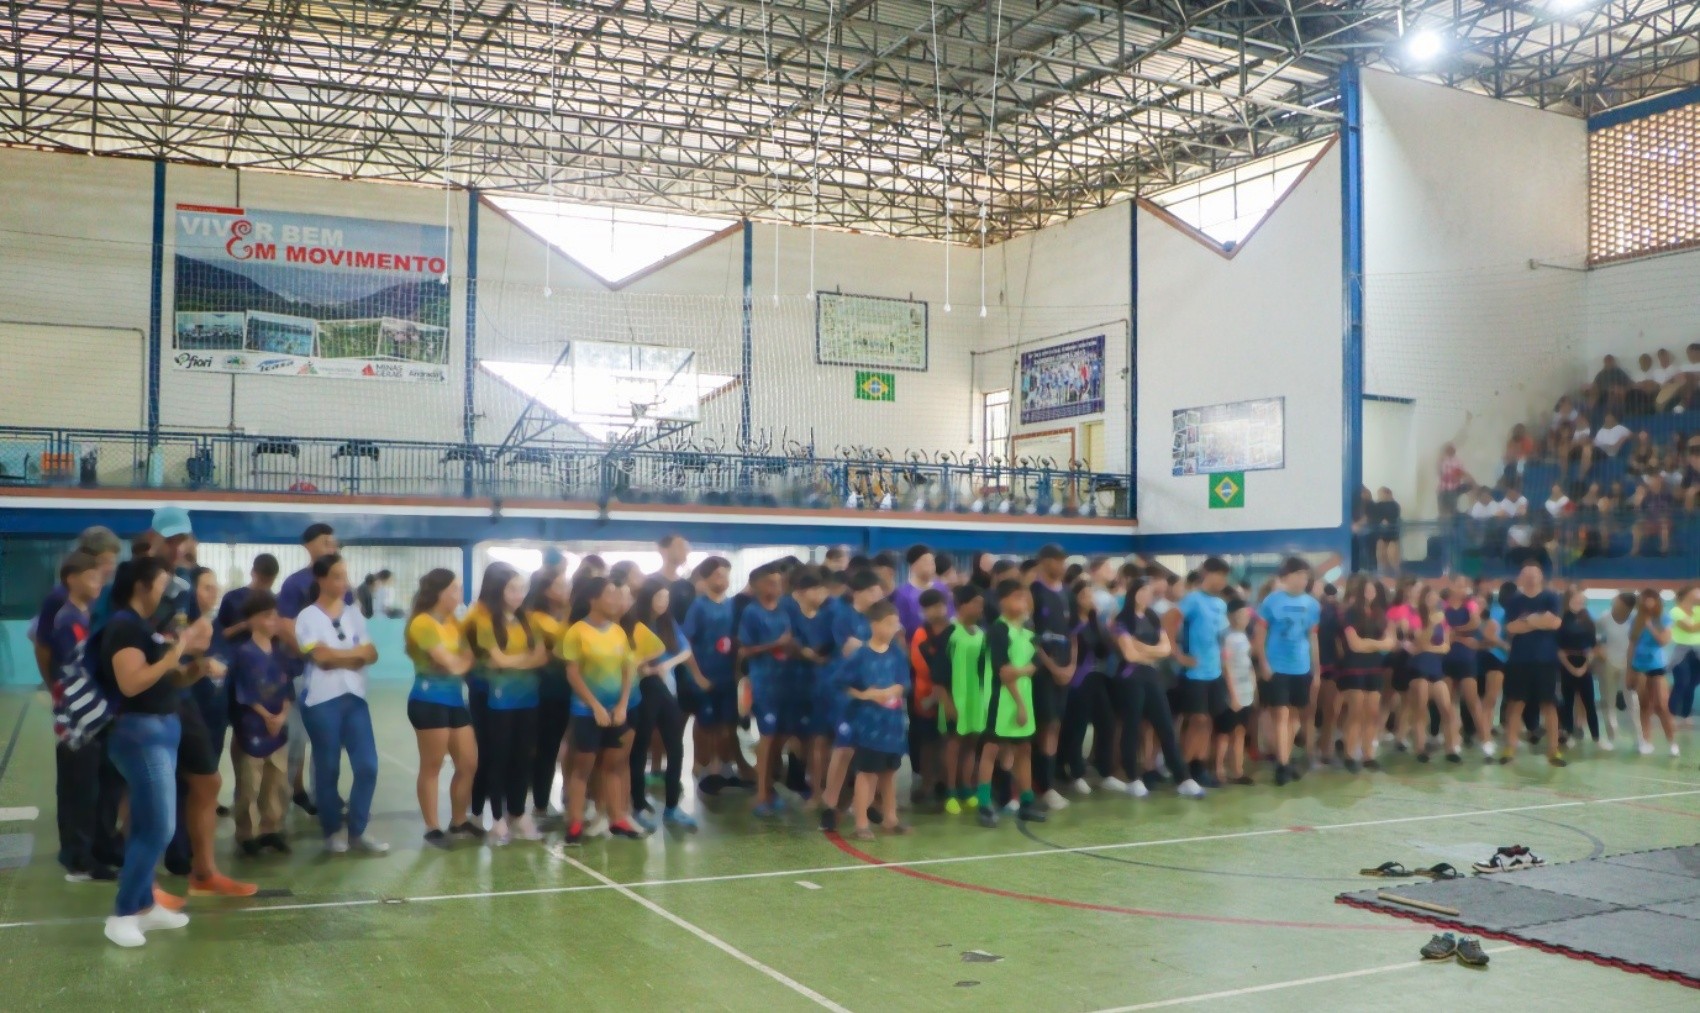 Polícia Civil investiga possível caso de injúria racial durante jogos escolares em Andradas, MG